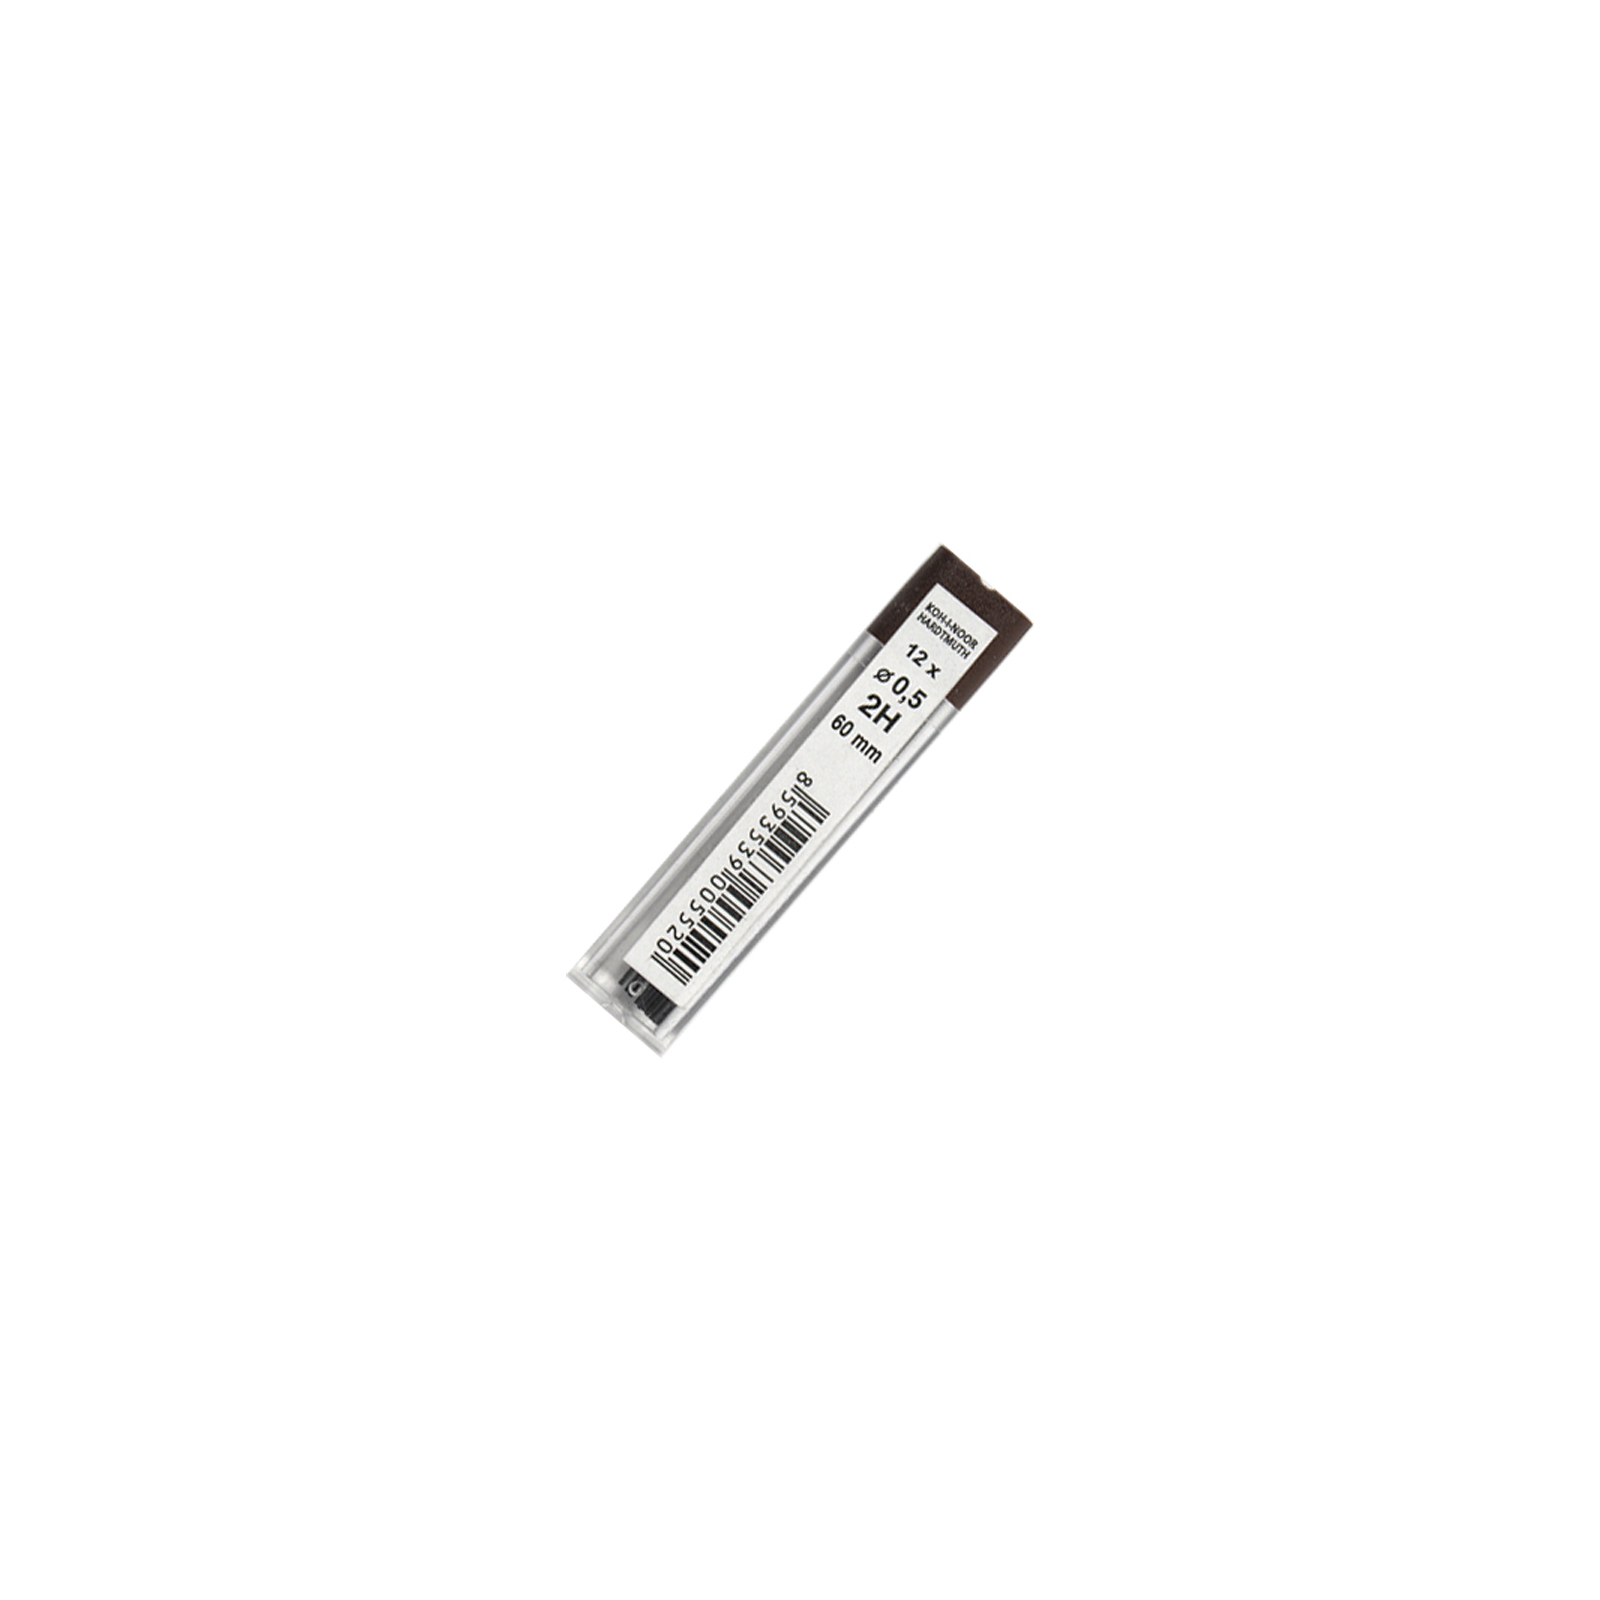 Грифель для механического карандаша Koh-i-Noor 4152.2H, 0.5 мм, 12шт (415202H005PK)